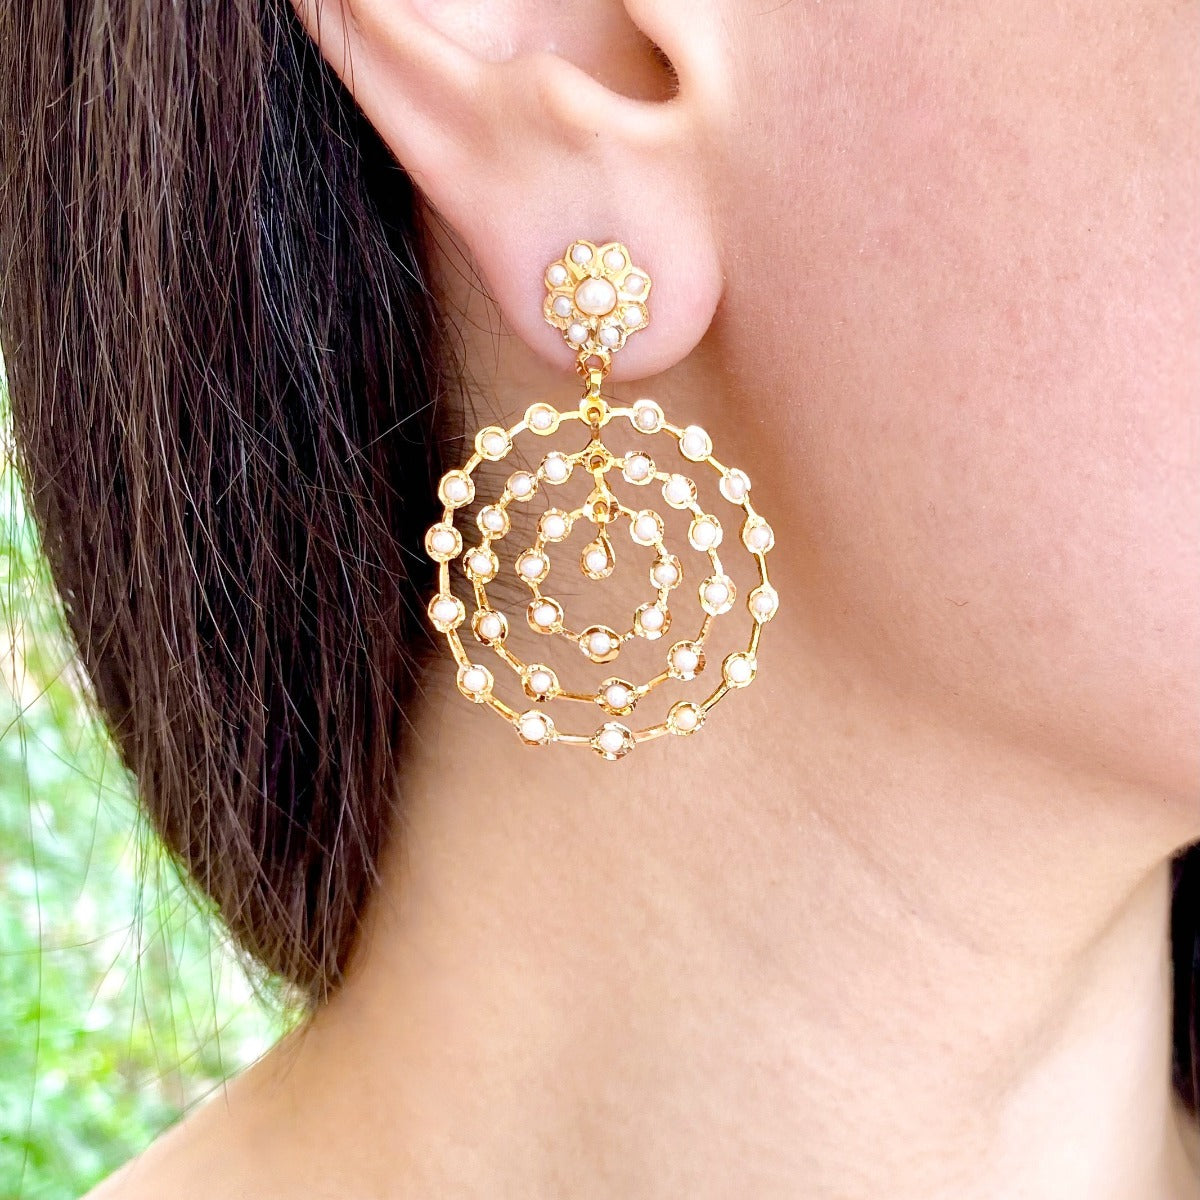 22k gold earrings